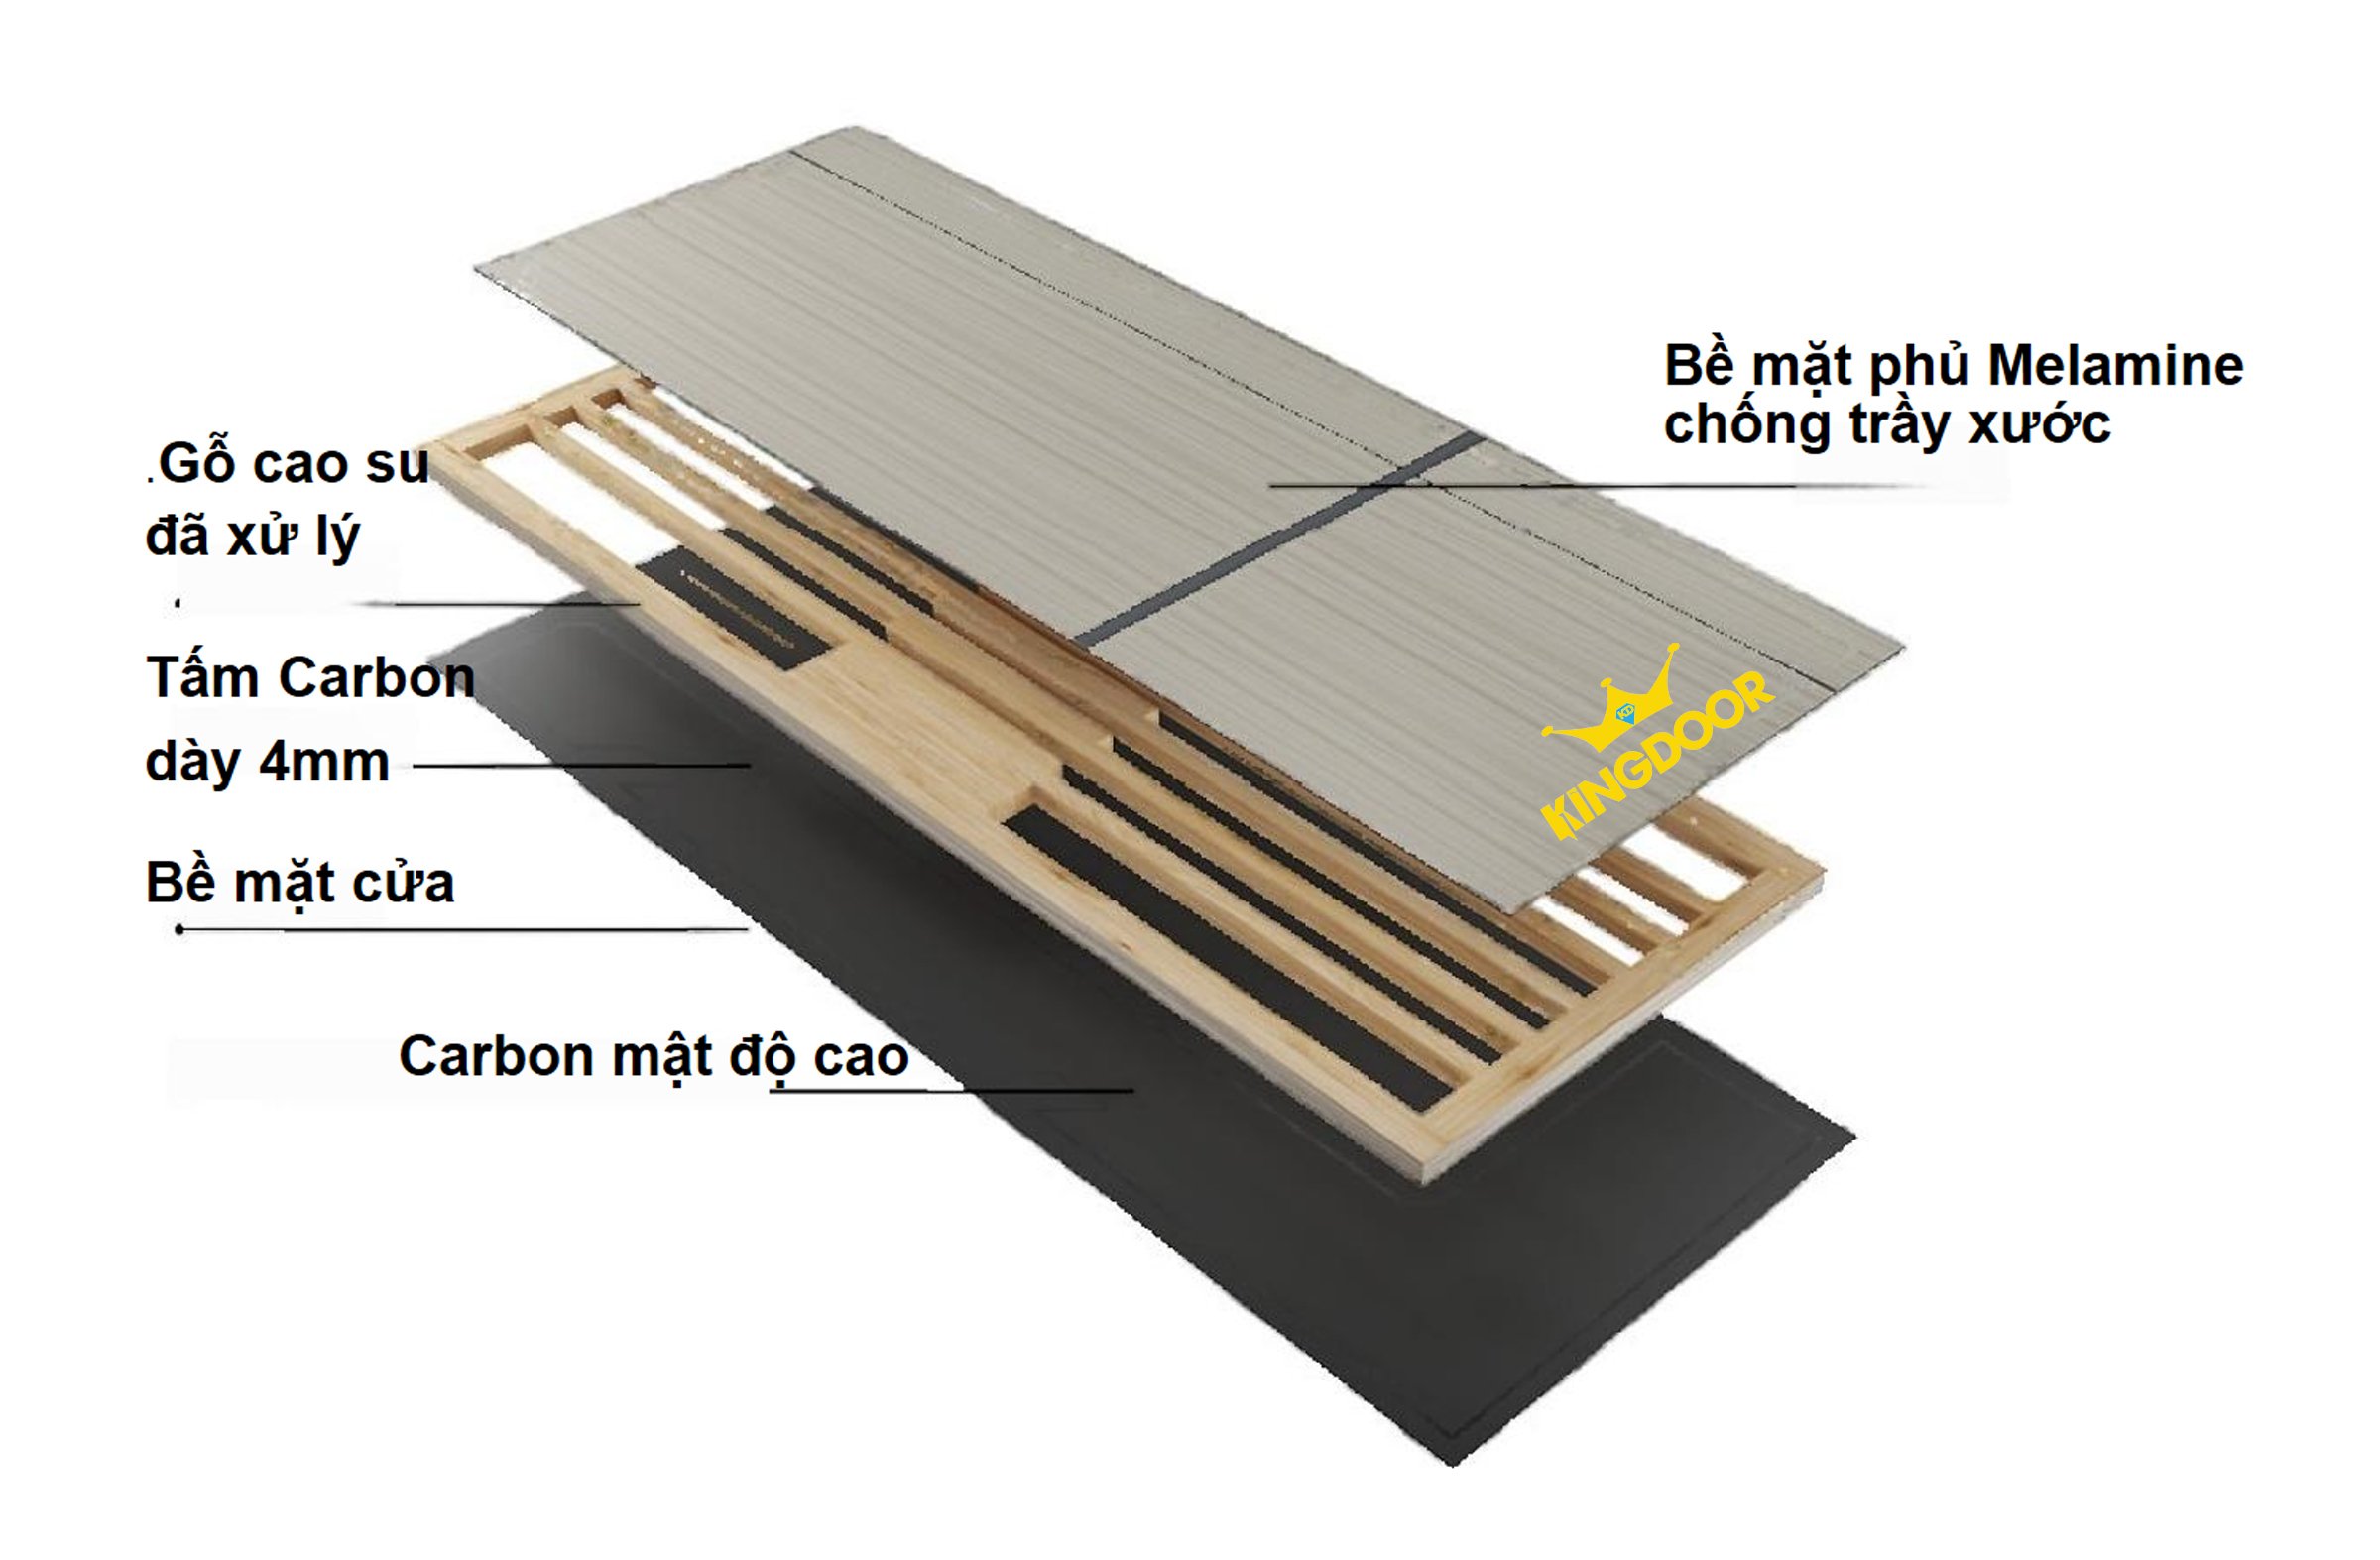 cửa gỗ carbon